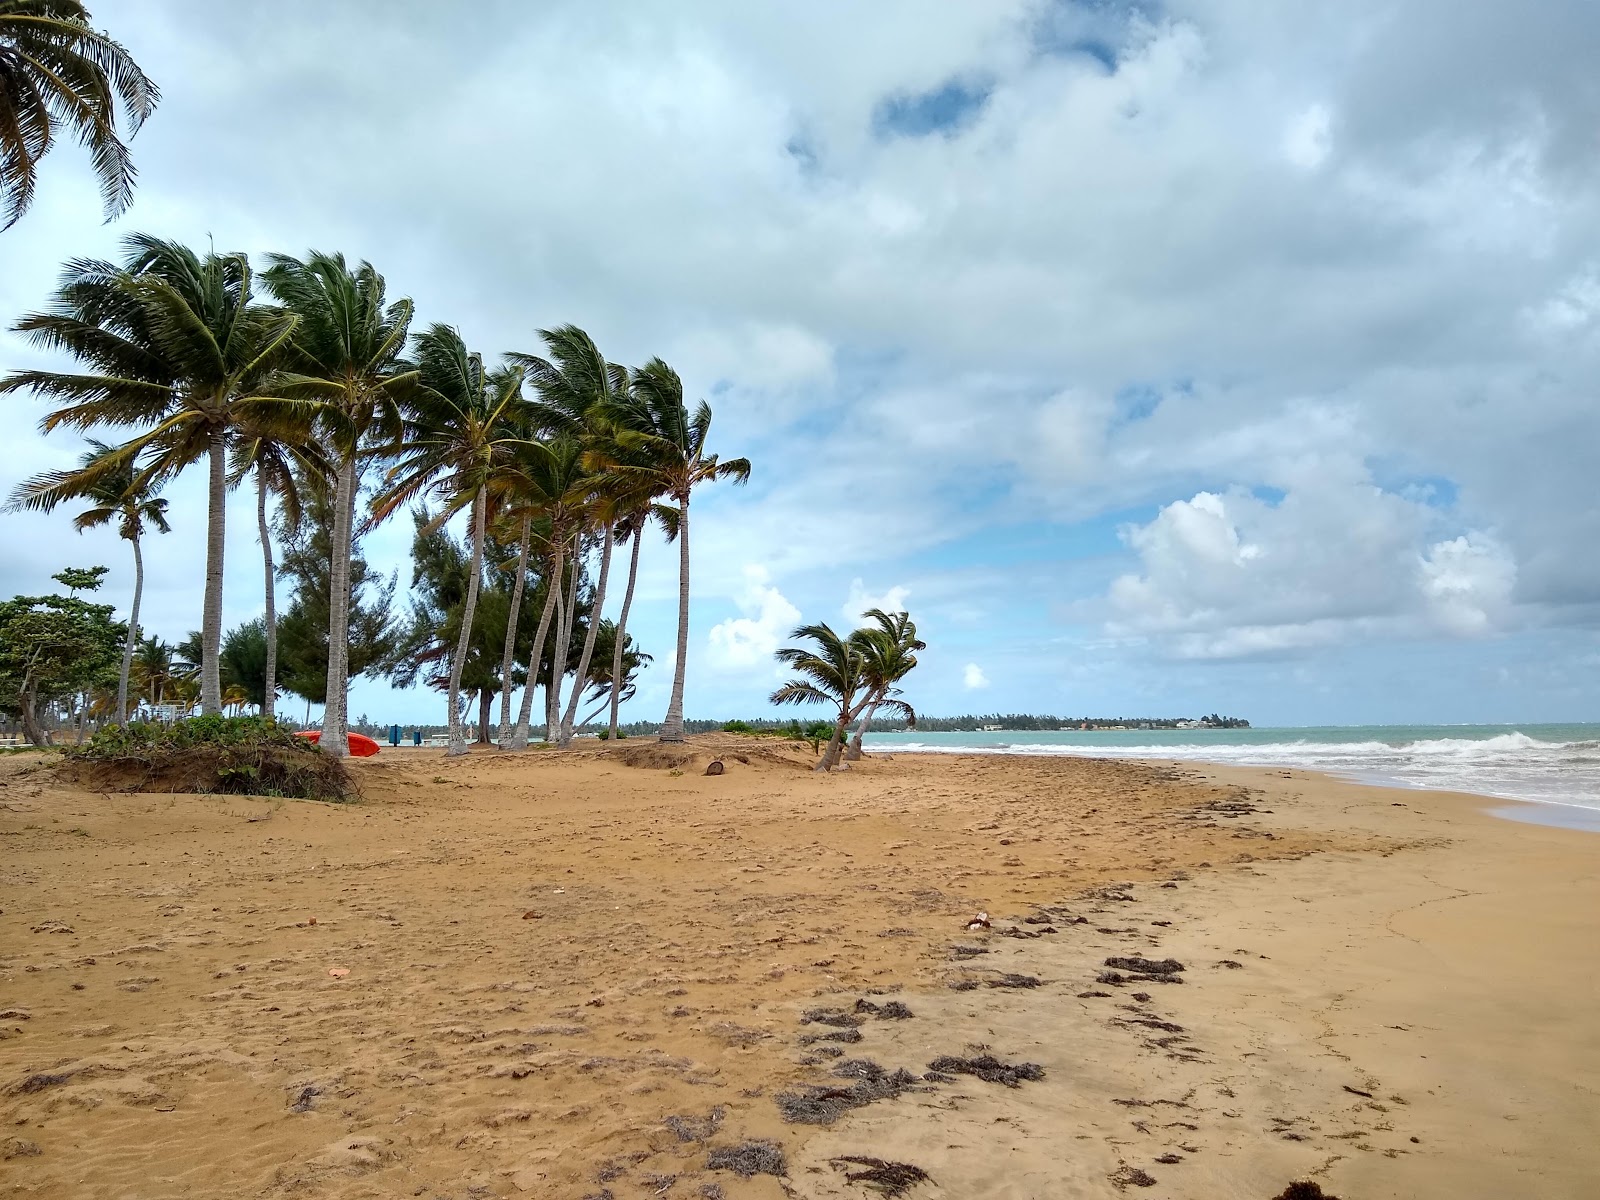 Zdjęcie Playa Rio Mar - popularne miejsce wśród znawców relaksu